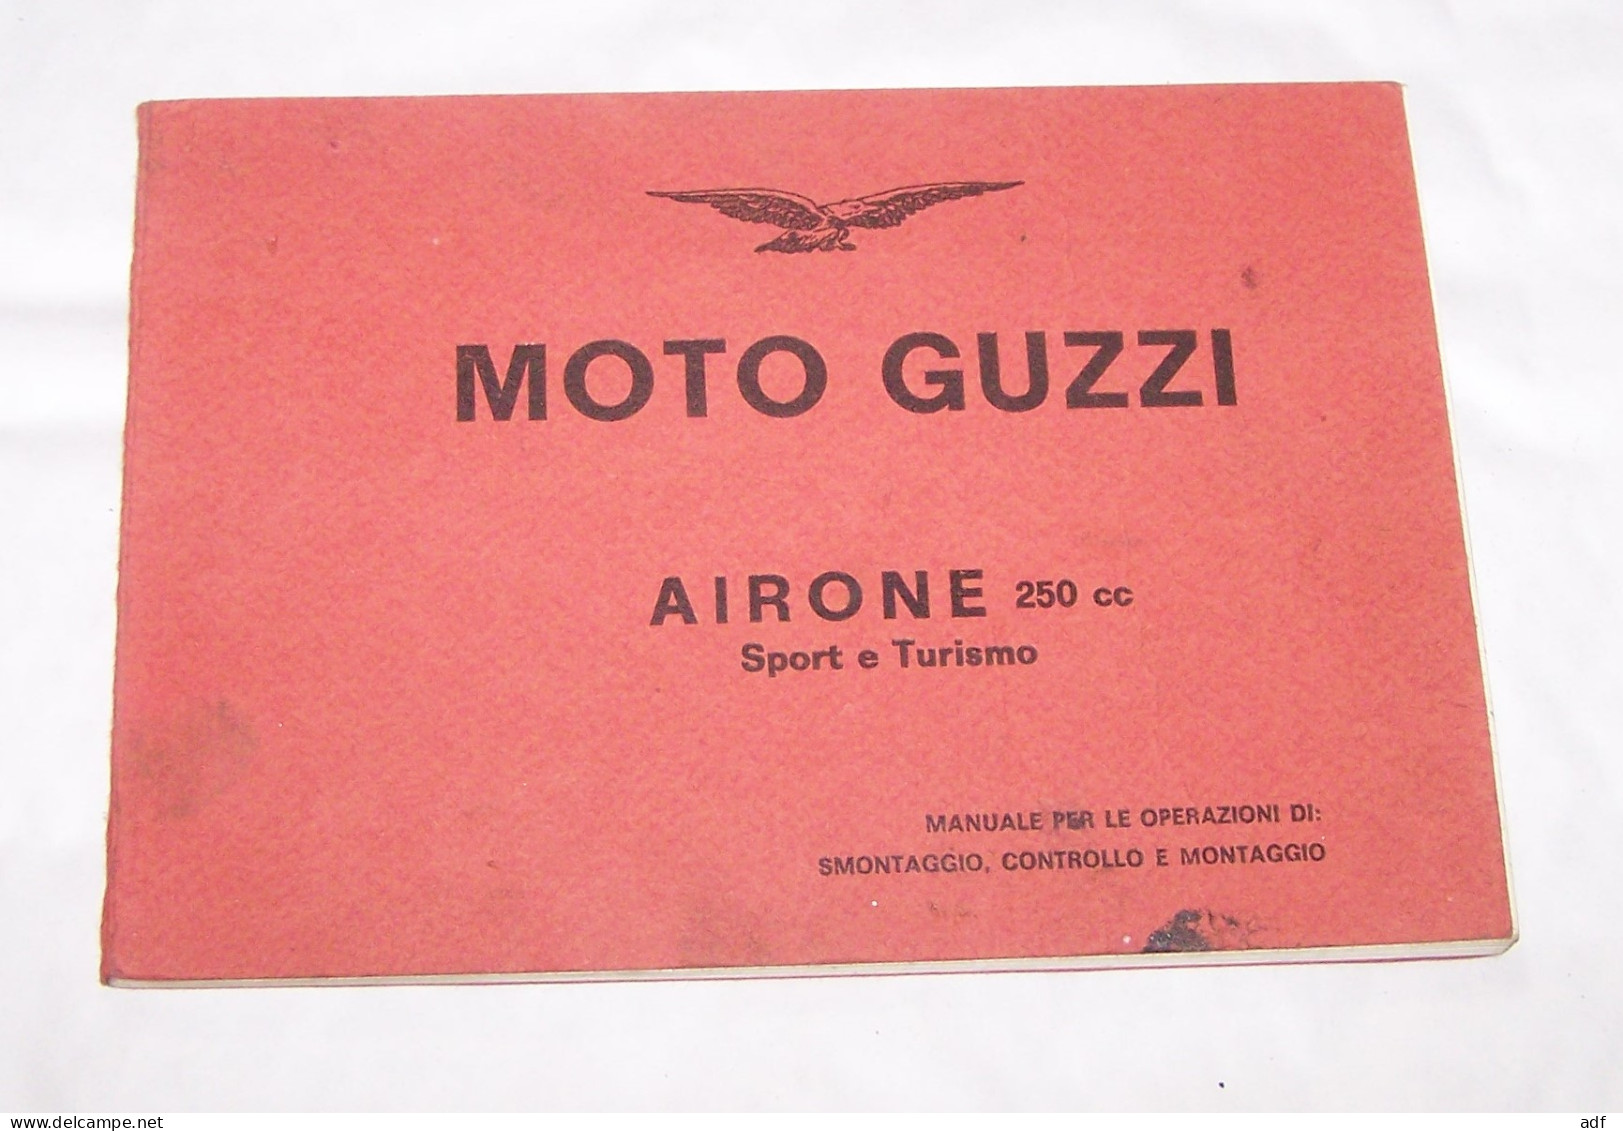 MOTO GUZZI AIRONE 250 CC SPORT ET TURISMO MANUALE PER LE OPERAZIONI DI SIMONTAGGIO, CONTROLLO E MONTAGGIO, MANUEL - Motos